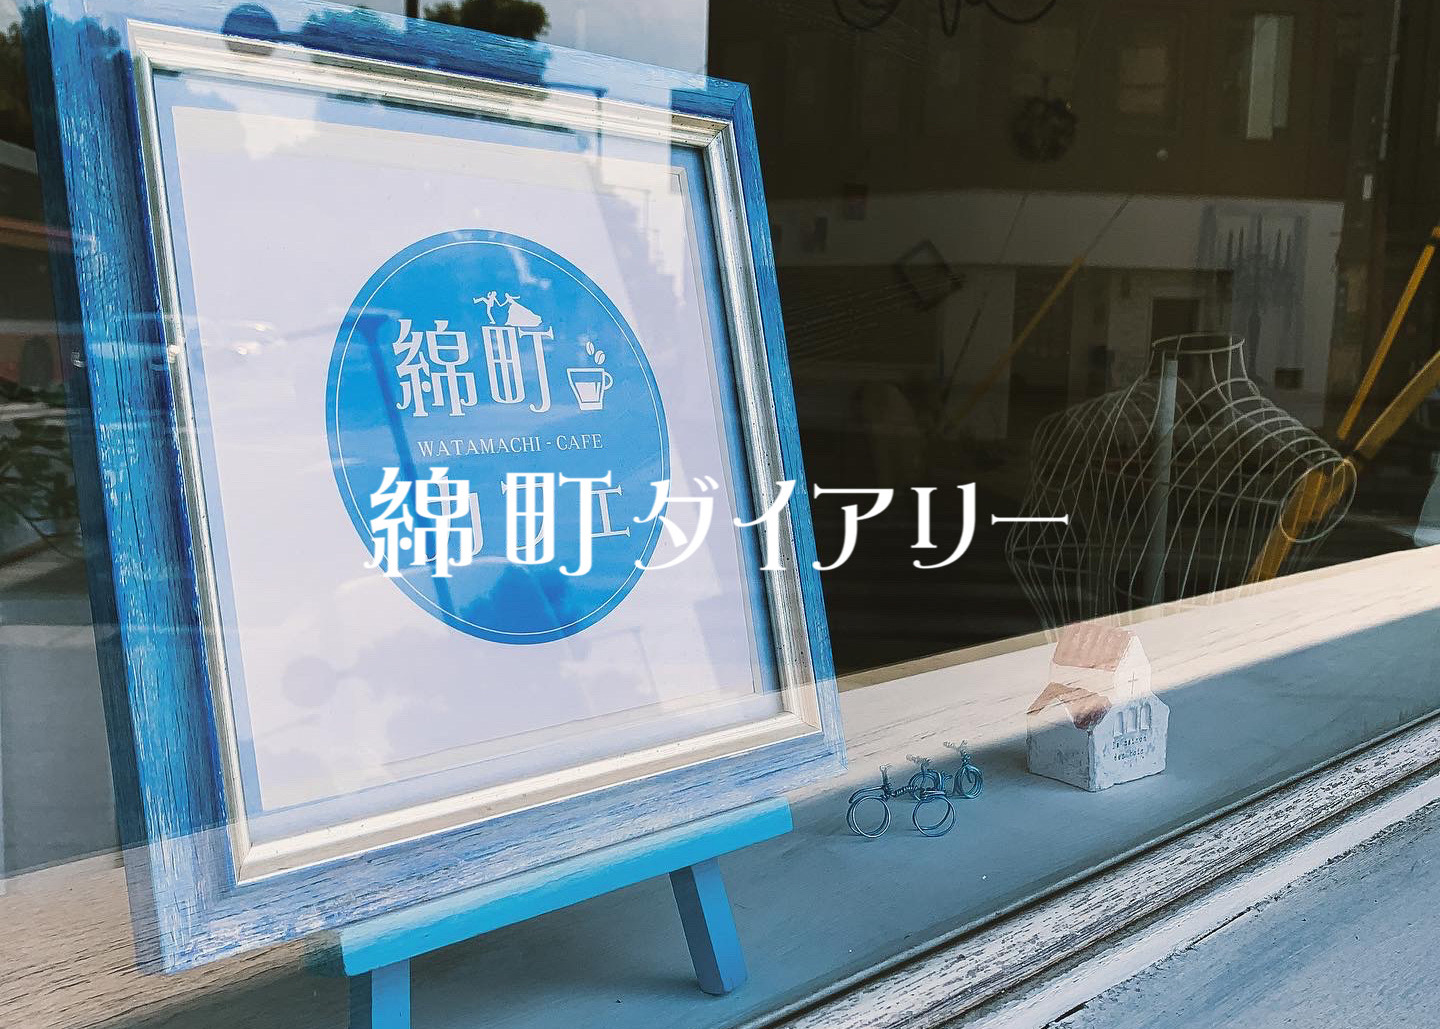 7 カフェの名前が決まった 綿町カフェ 姫路市綿町にある姫路城周辺のカフェ コーヒーショップ